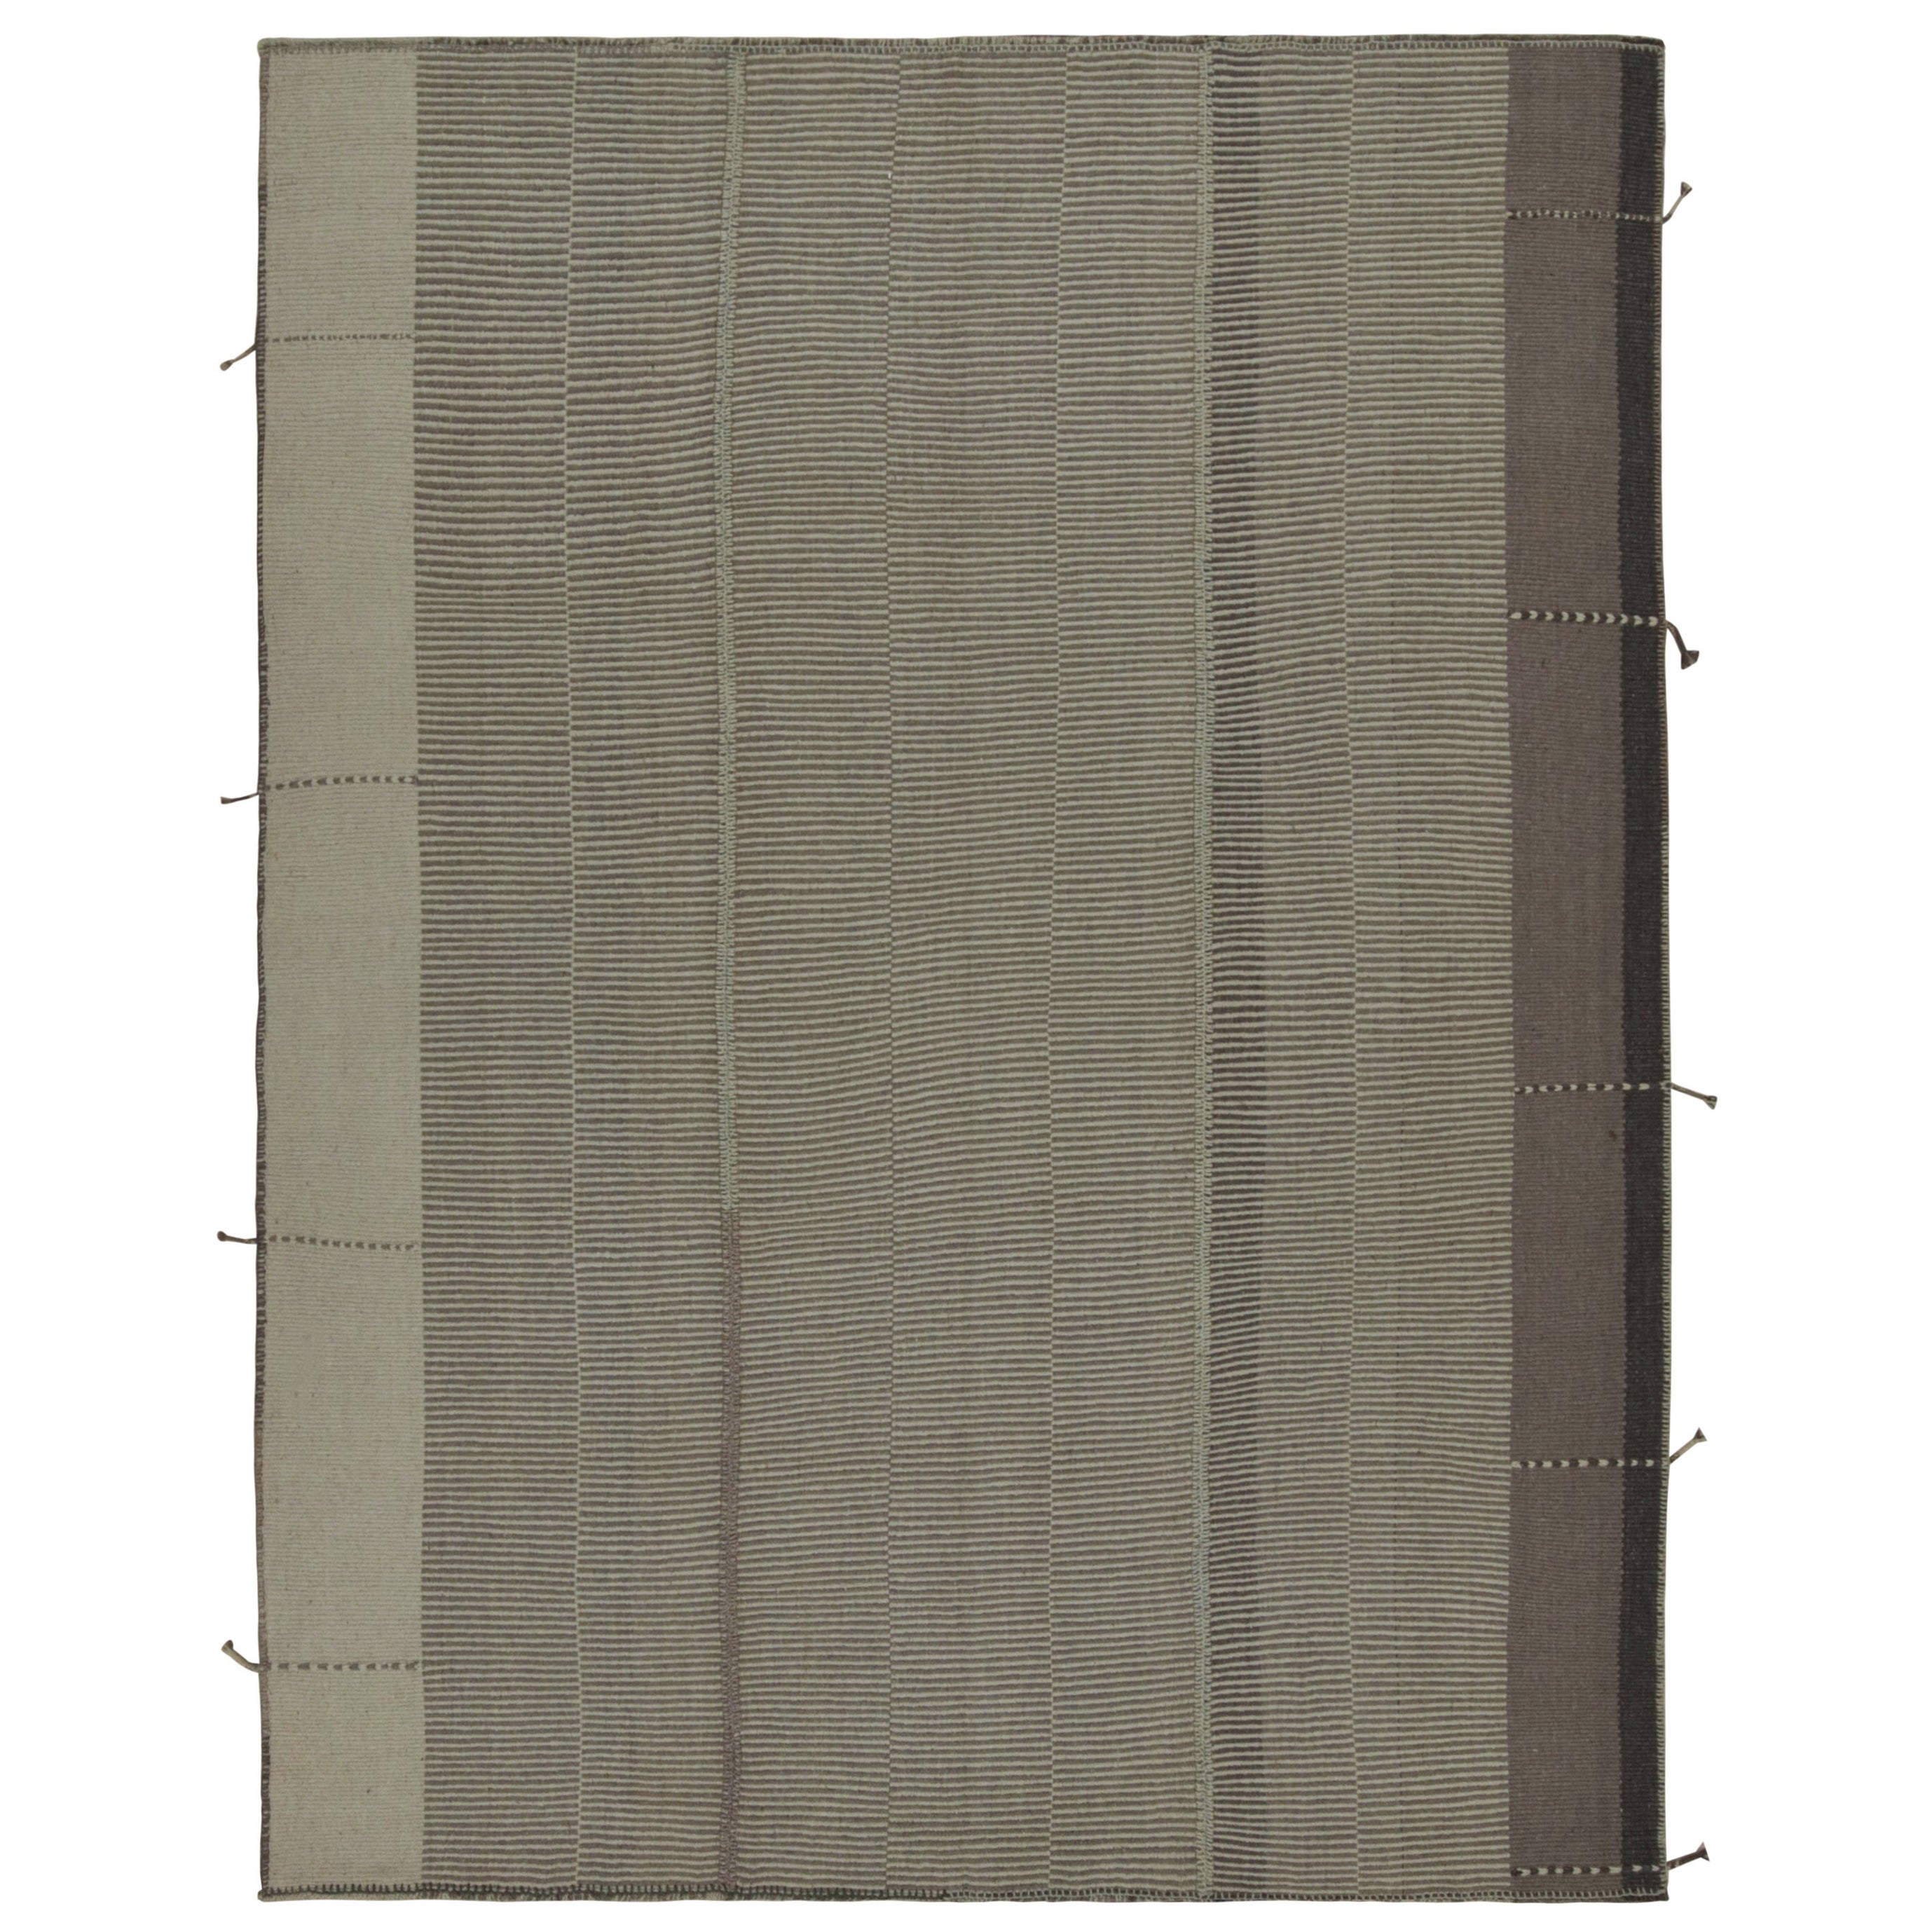 Rug & Kilim's Modern Kilim in Beige & Gray stripes (Kilim moderne à rayures beiges et grises)